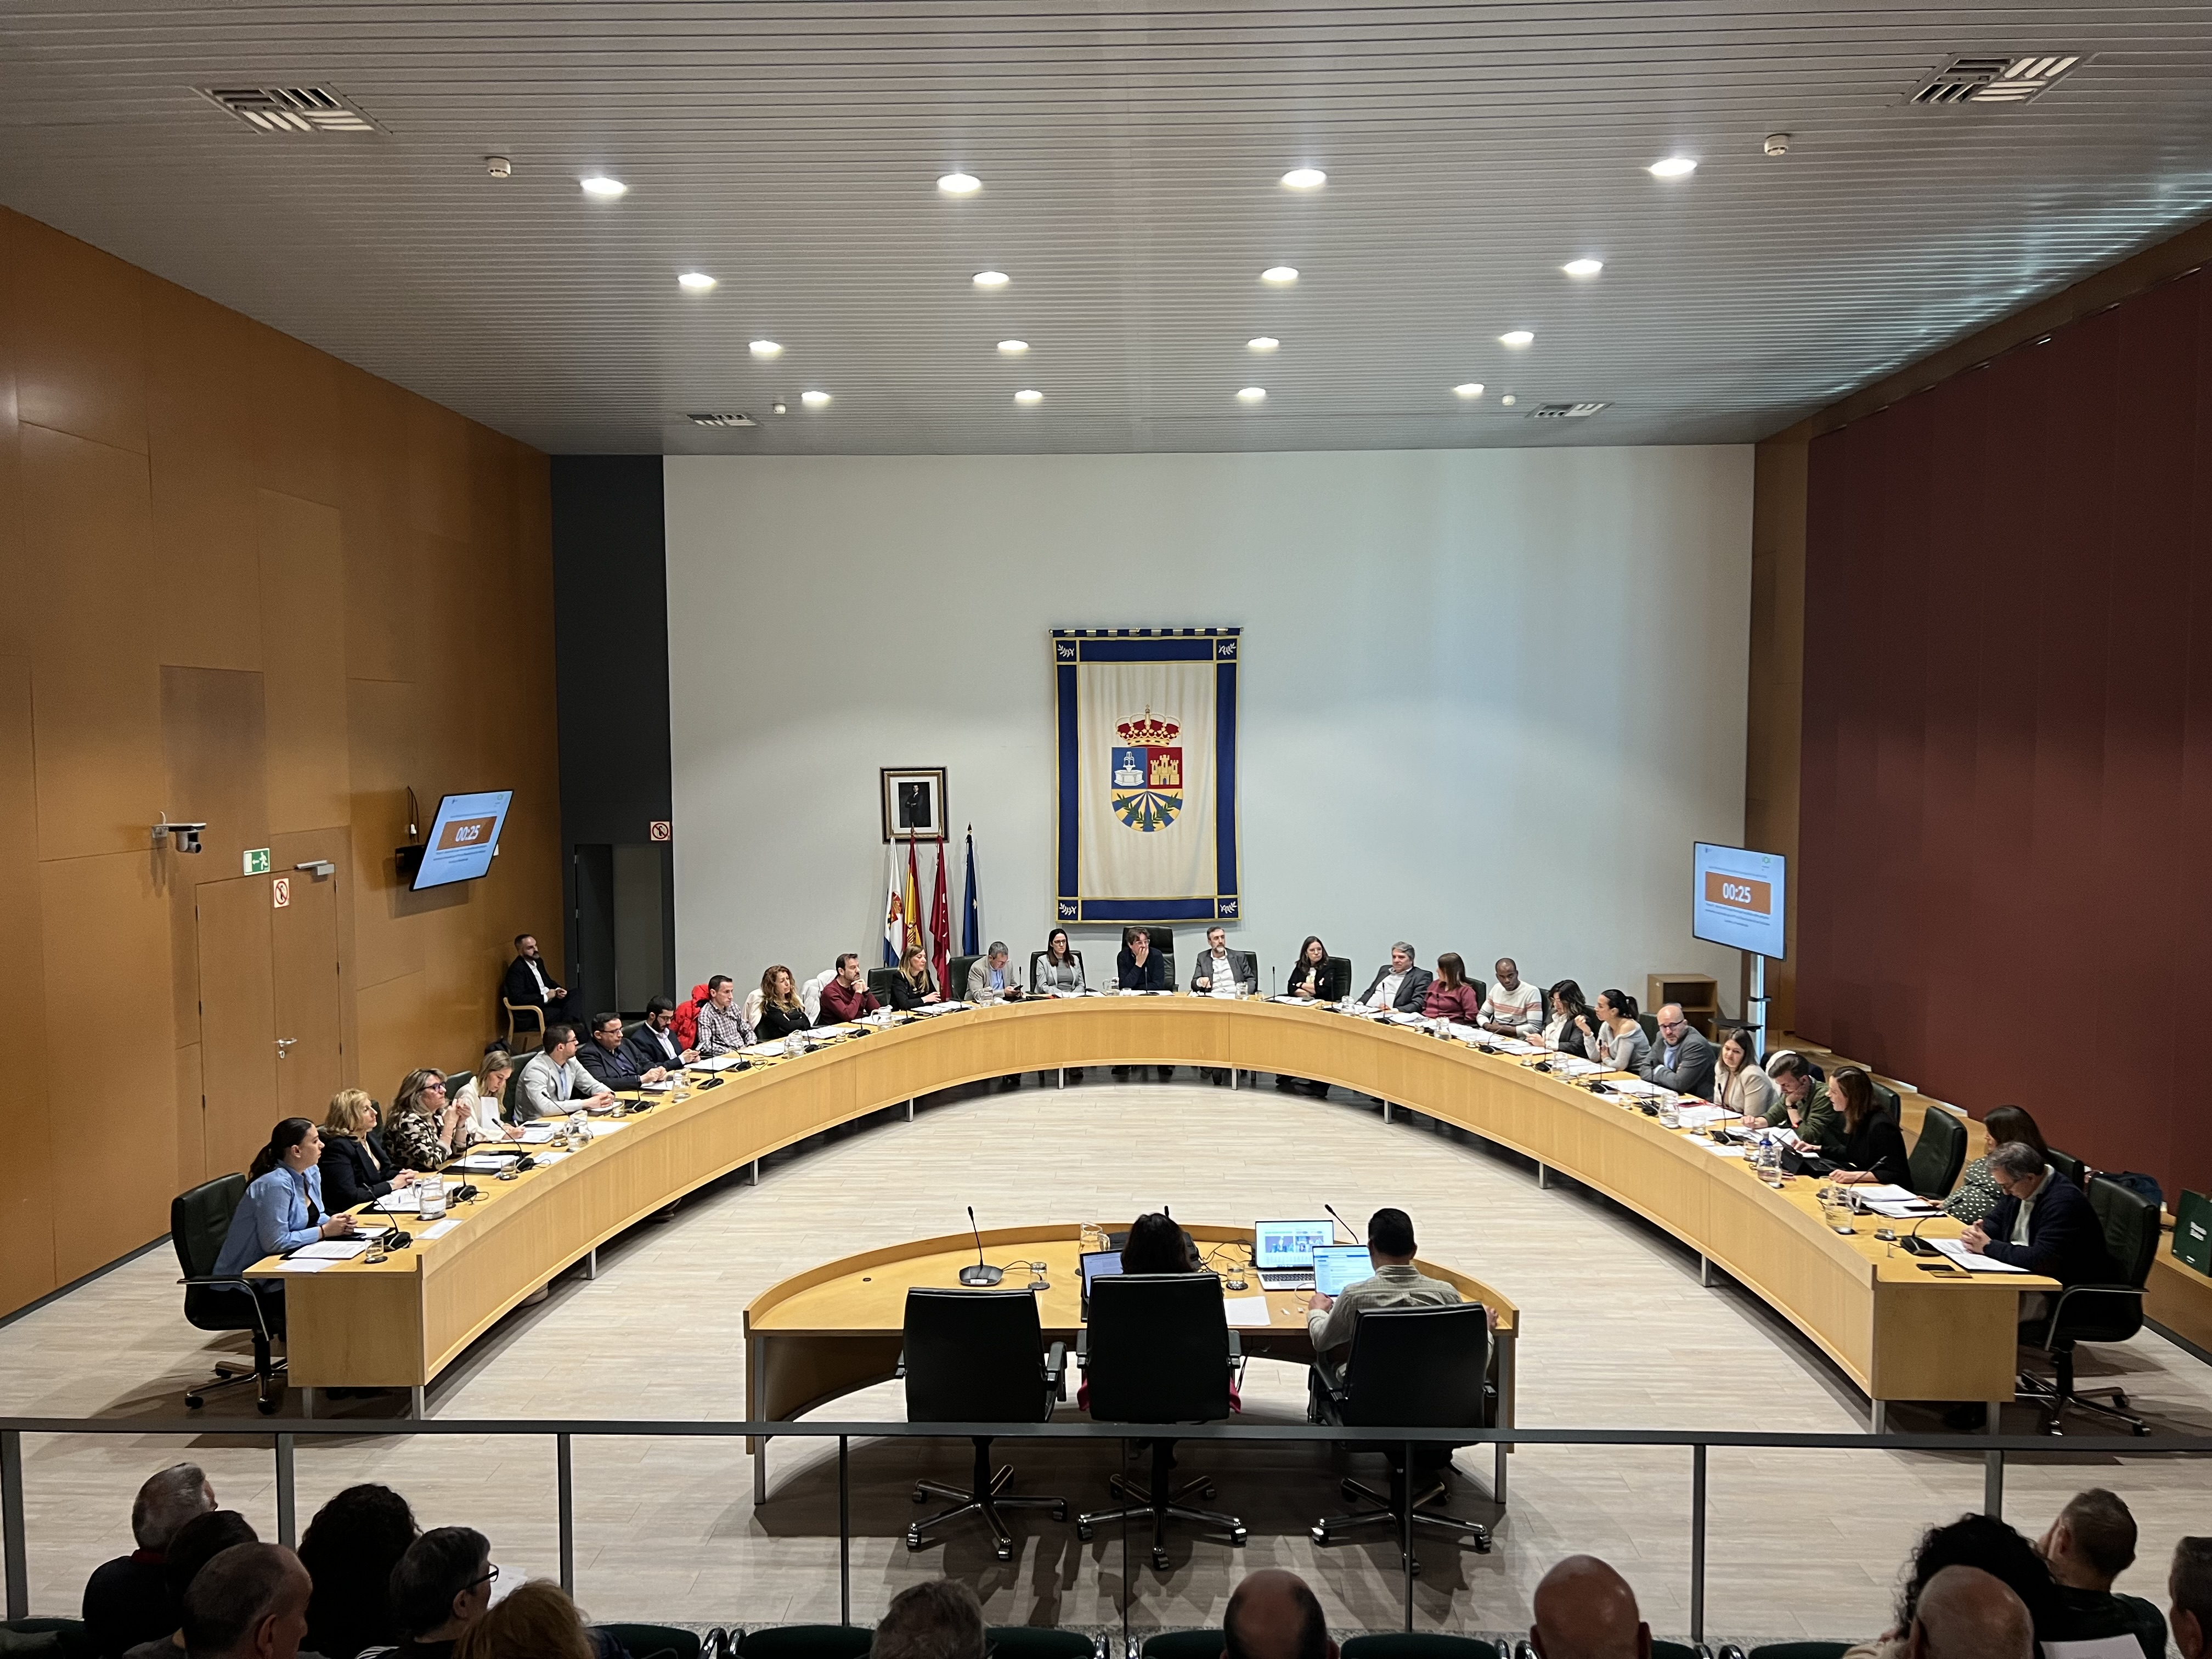 El pleno del Ayuntamiento de Fuenlabrada aprueba moción para revocar recortes en atención primaria y fortalecer políticas de salud en la región.